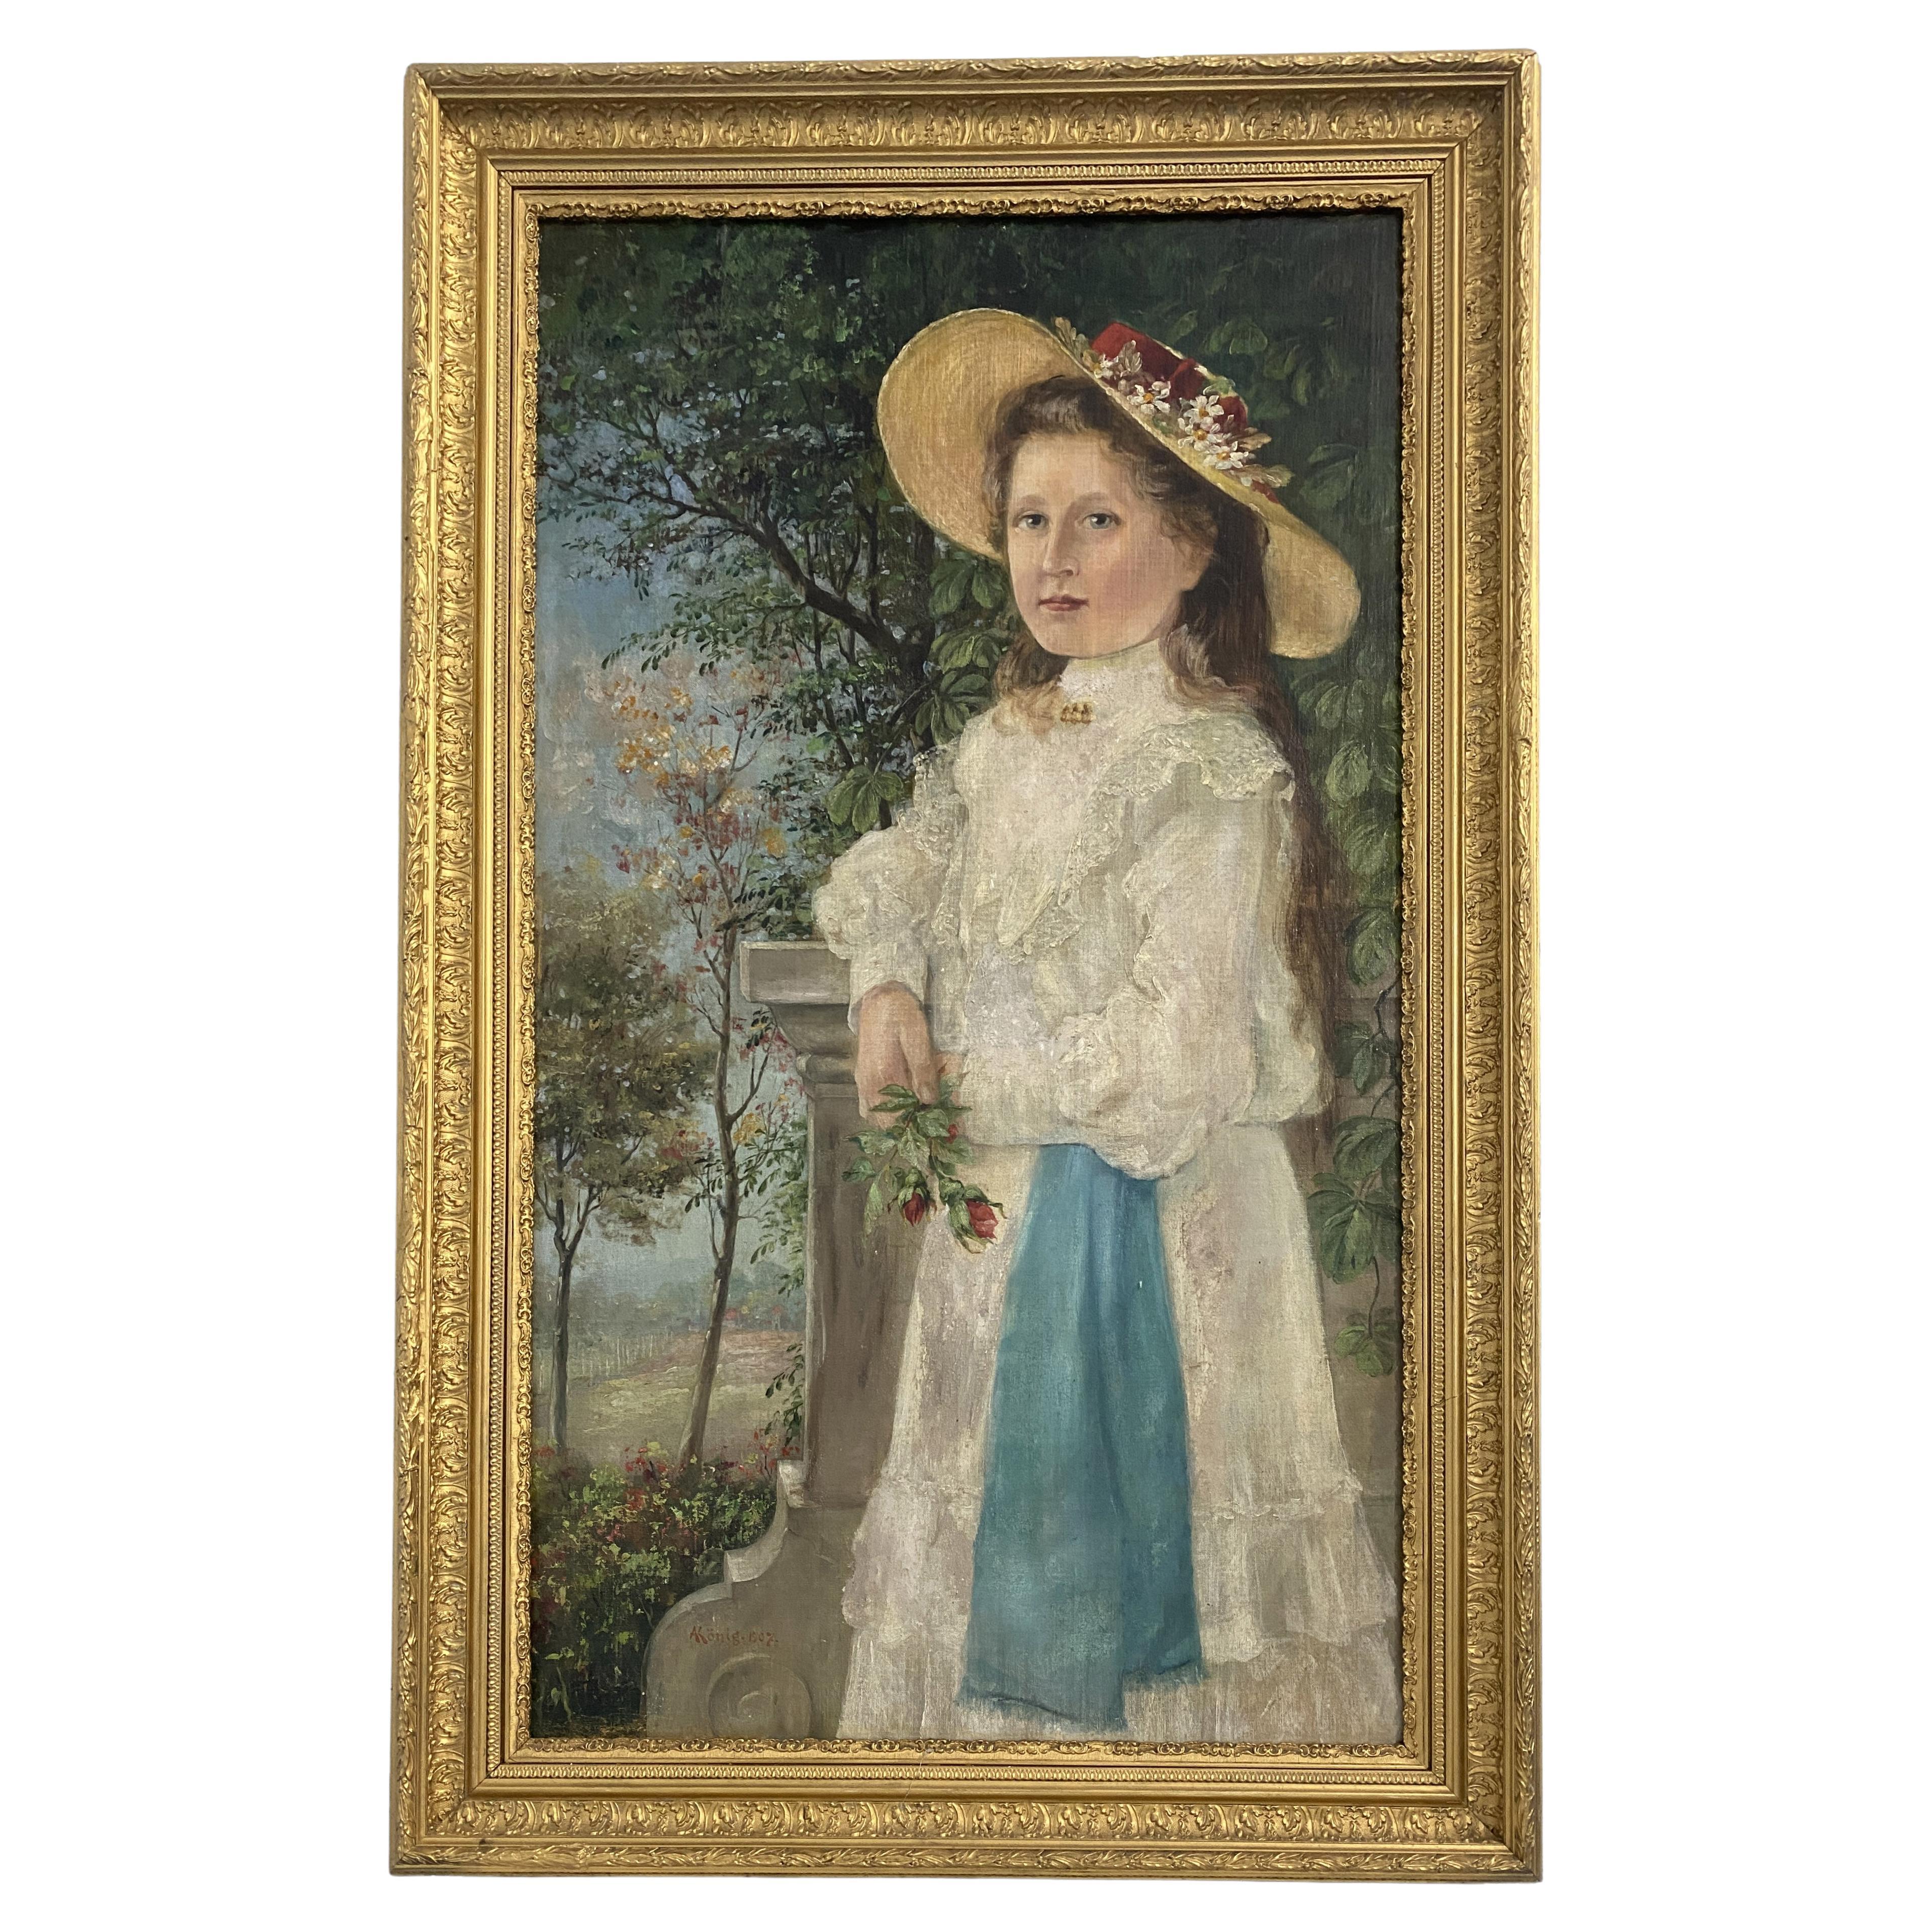 Ancienne peinture à l'huile allemande 'Portrait d'une jeune fille' de 1901 signée Konig